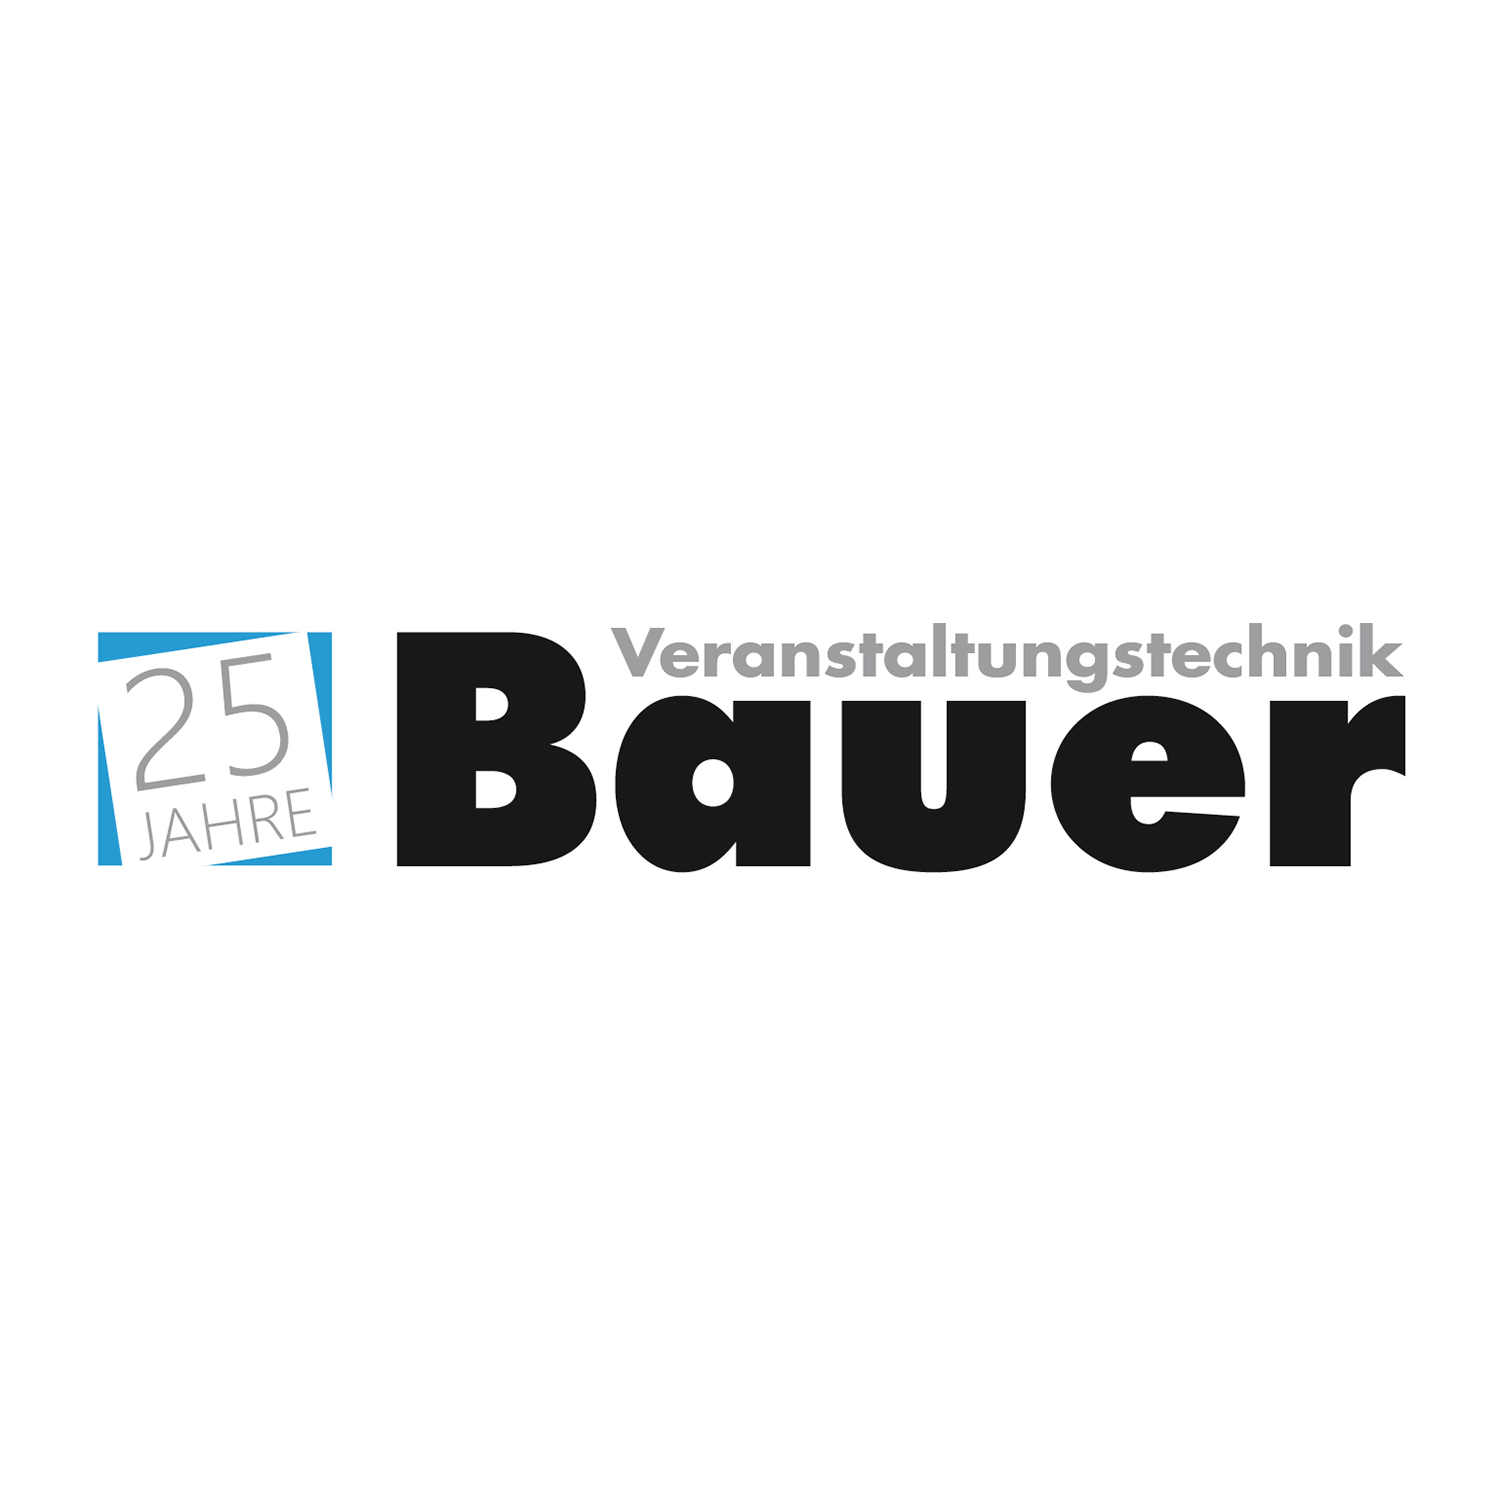 BAUER VERANSTALTUNGSTECHNIK in Wipperfürth - Logo